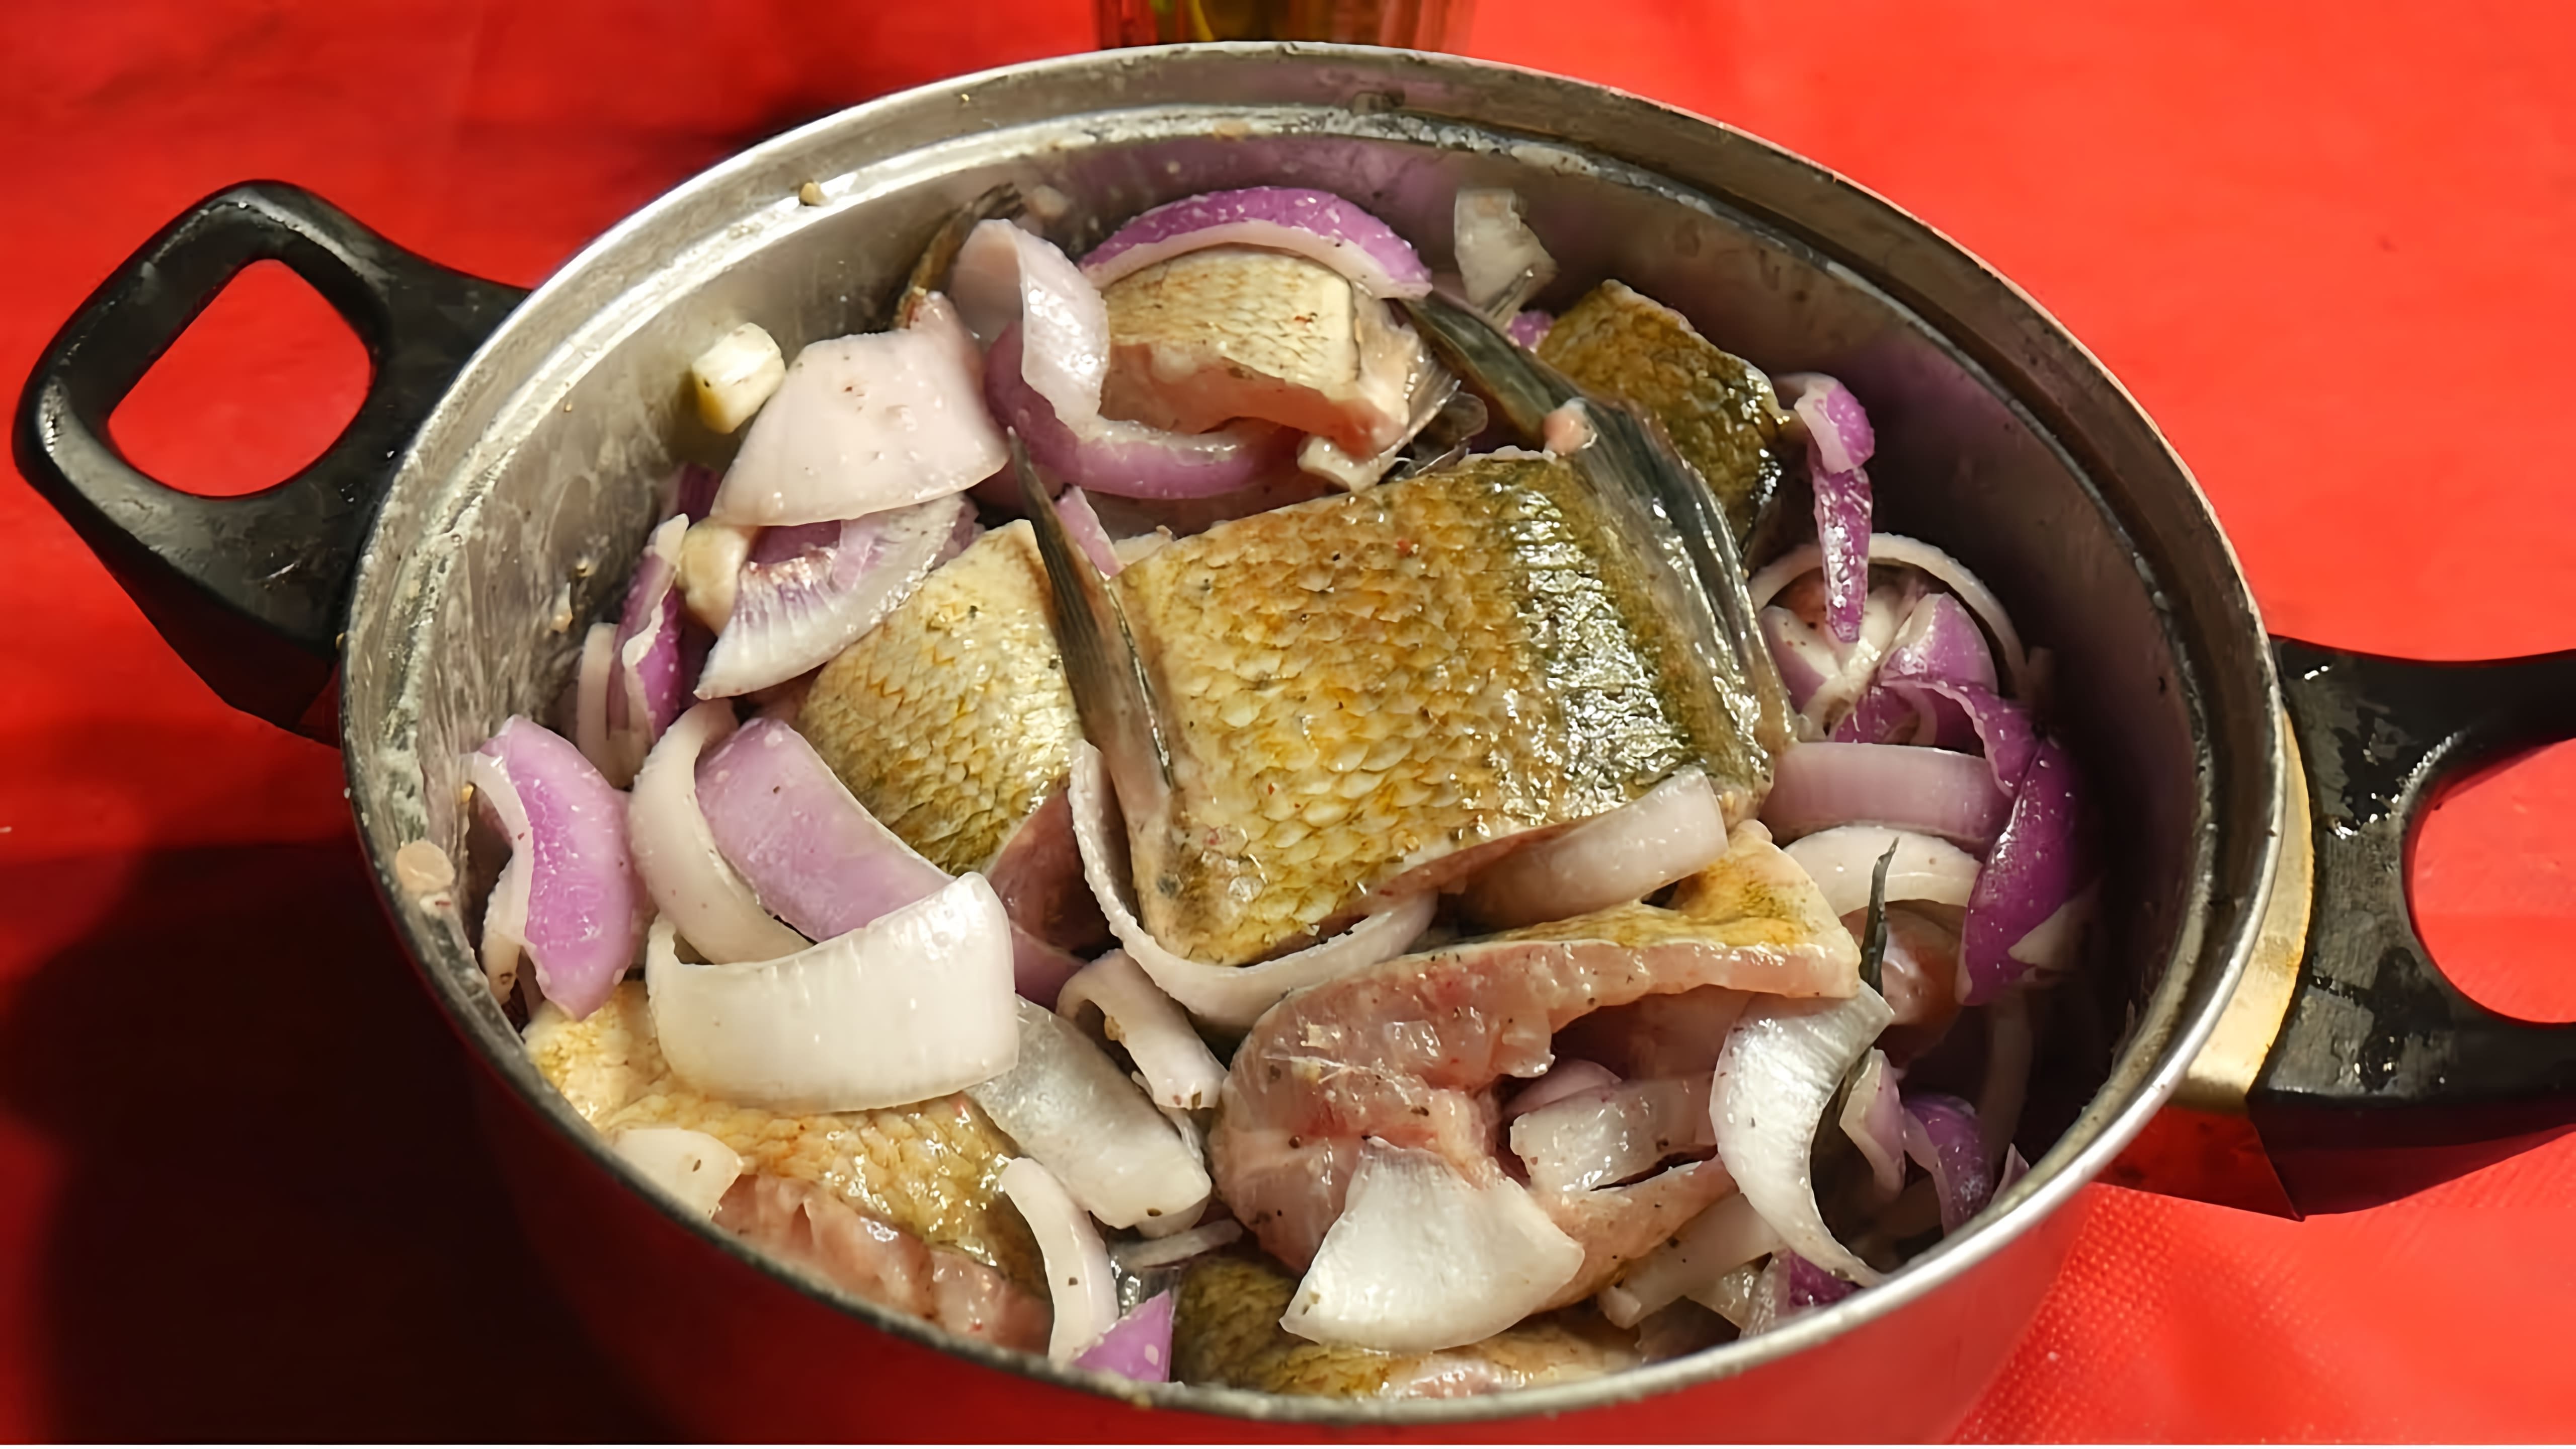 В этом видео демонстрируется процесс приготовления блюда из рыбы, которое называется "5 минутка"